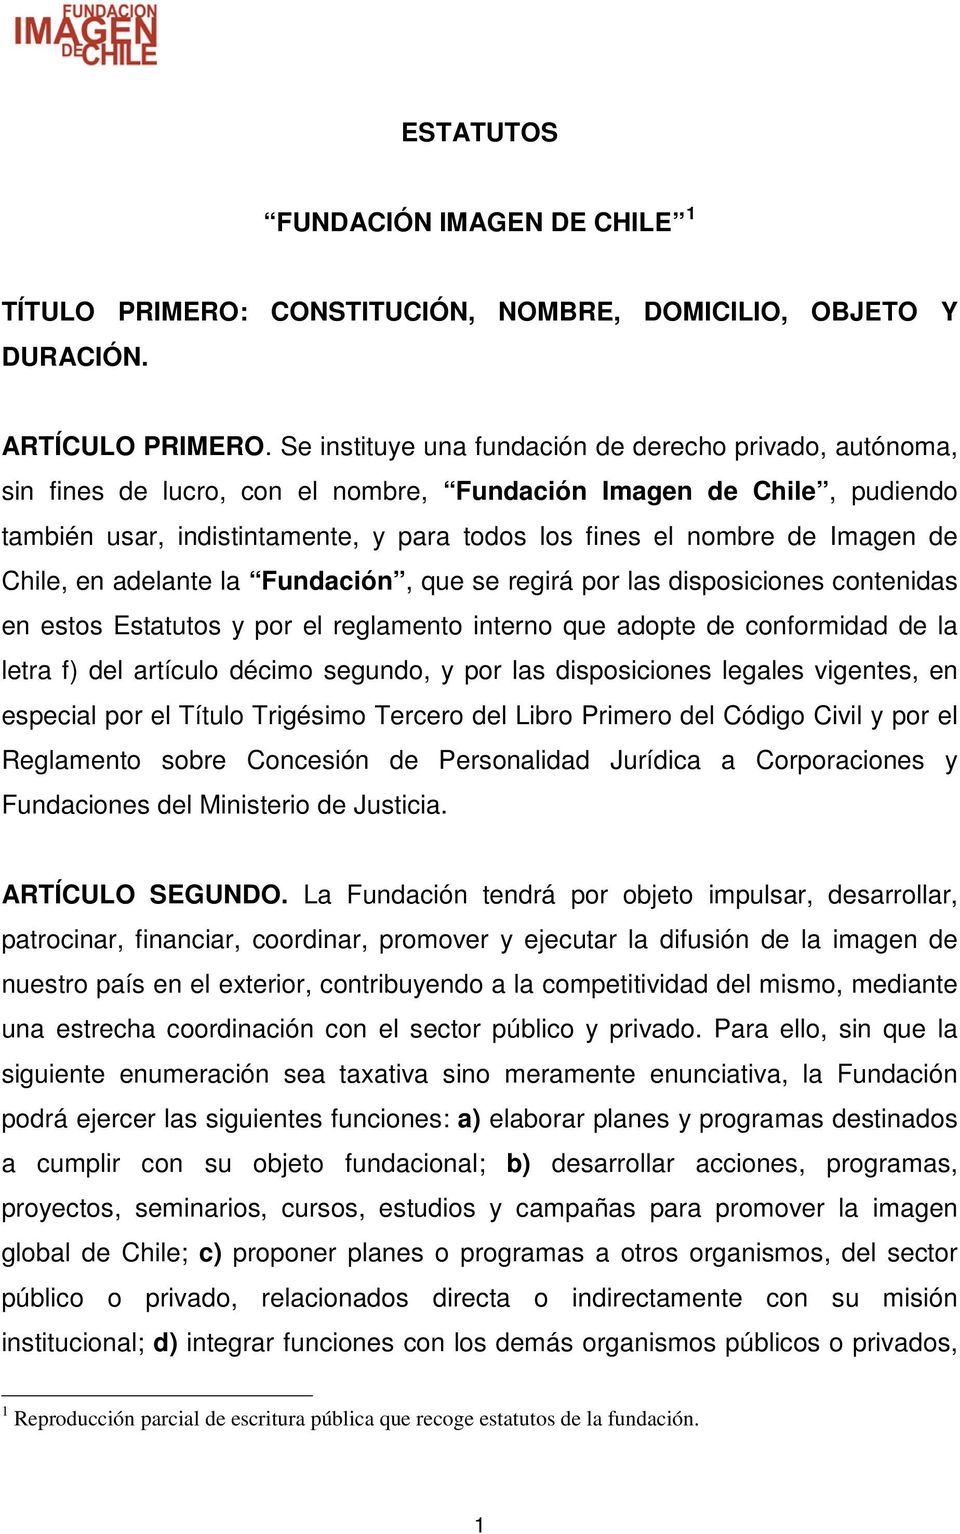 Imagen de Chile, en adelante la Fundación, que se regirá por las disposiciones contenidas en estos Estatutos y por el reglamento interno que adopte de conformidad de la letra f) del artículo décimo